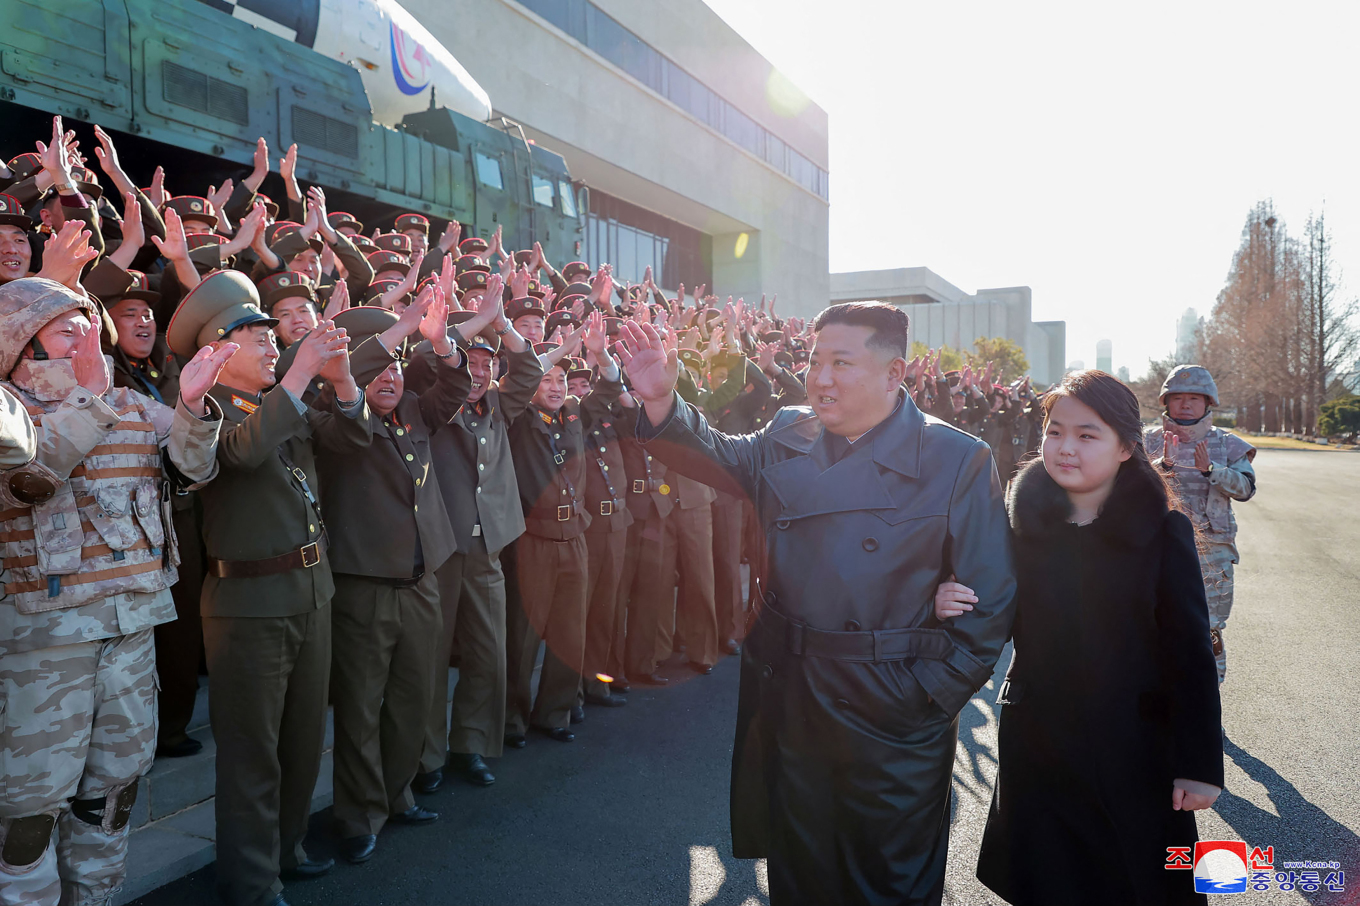 Βόρεια Κορέα: Η δεύτερη δημόσια εμφάνιση του Κιμ Γιονγκ Ουν με την κόρη του πυροδοτεί νέα σενάρια διαδοχής